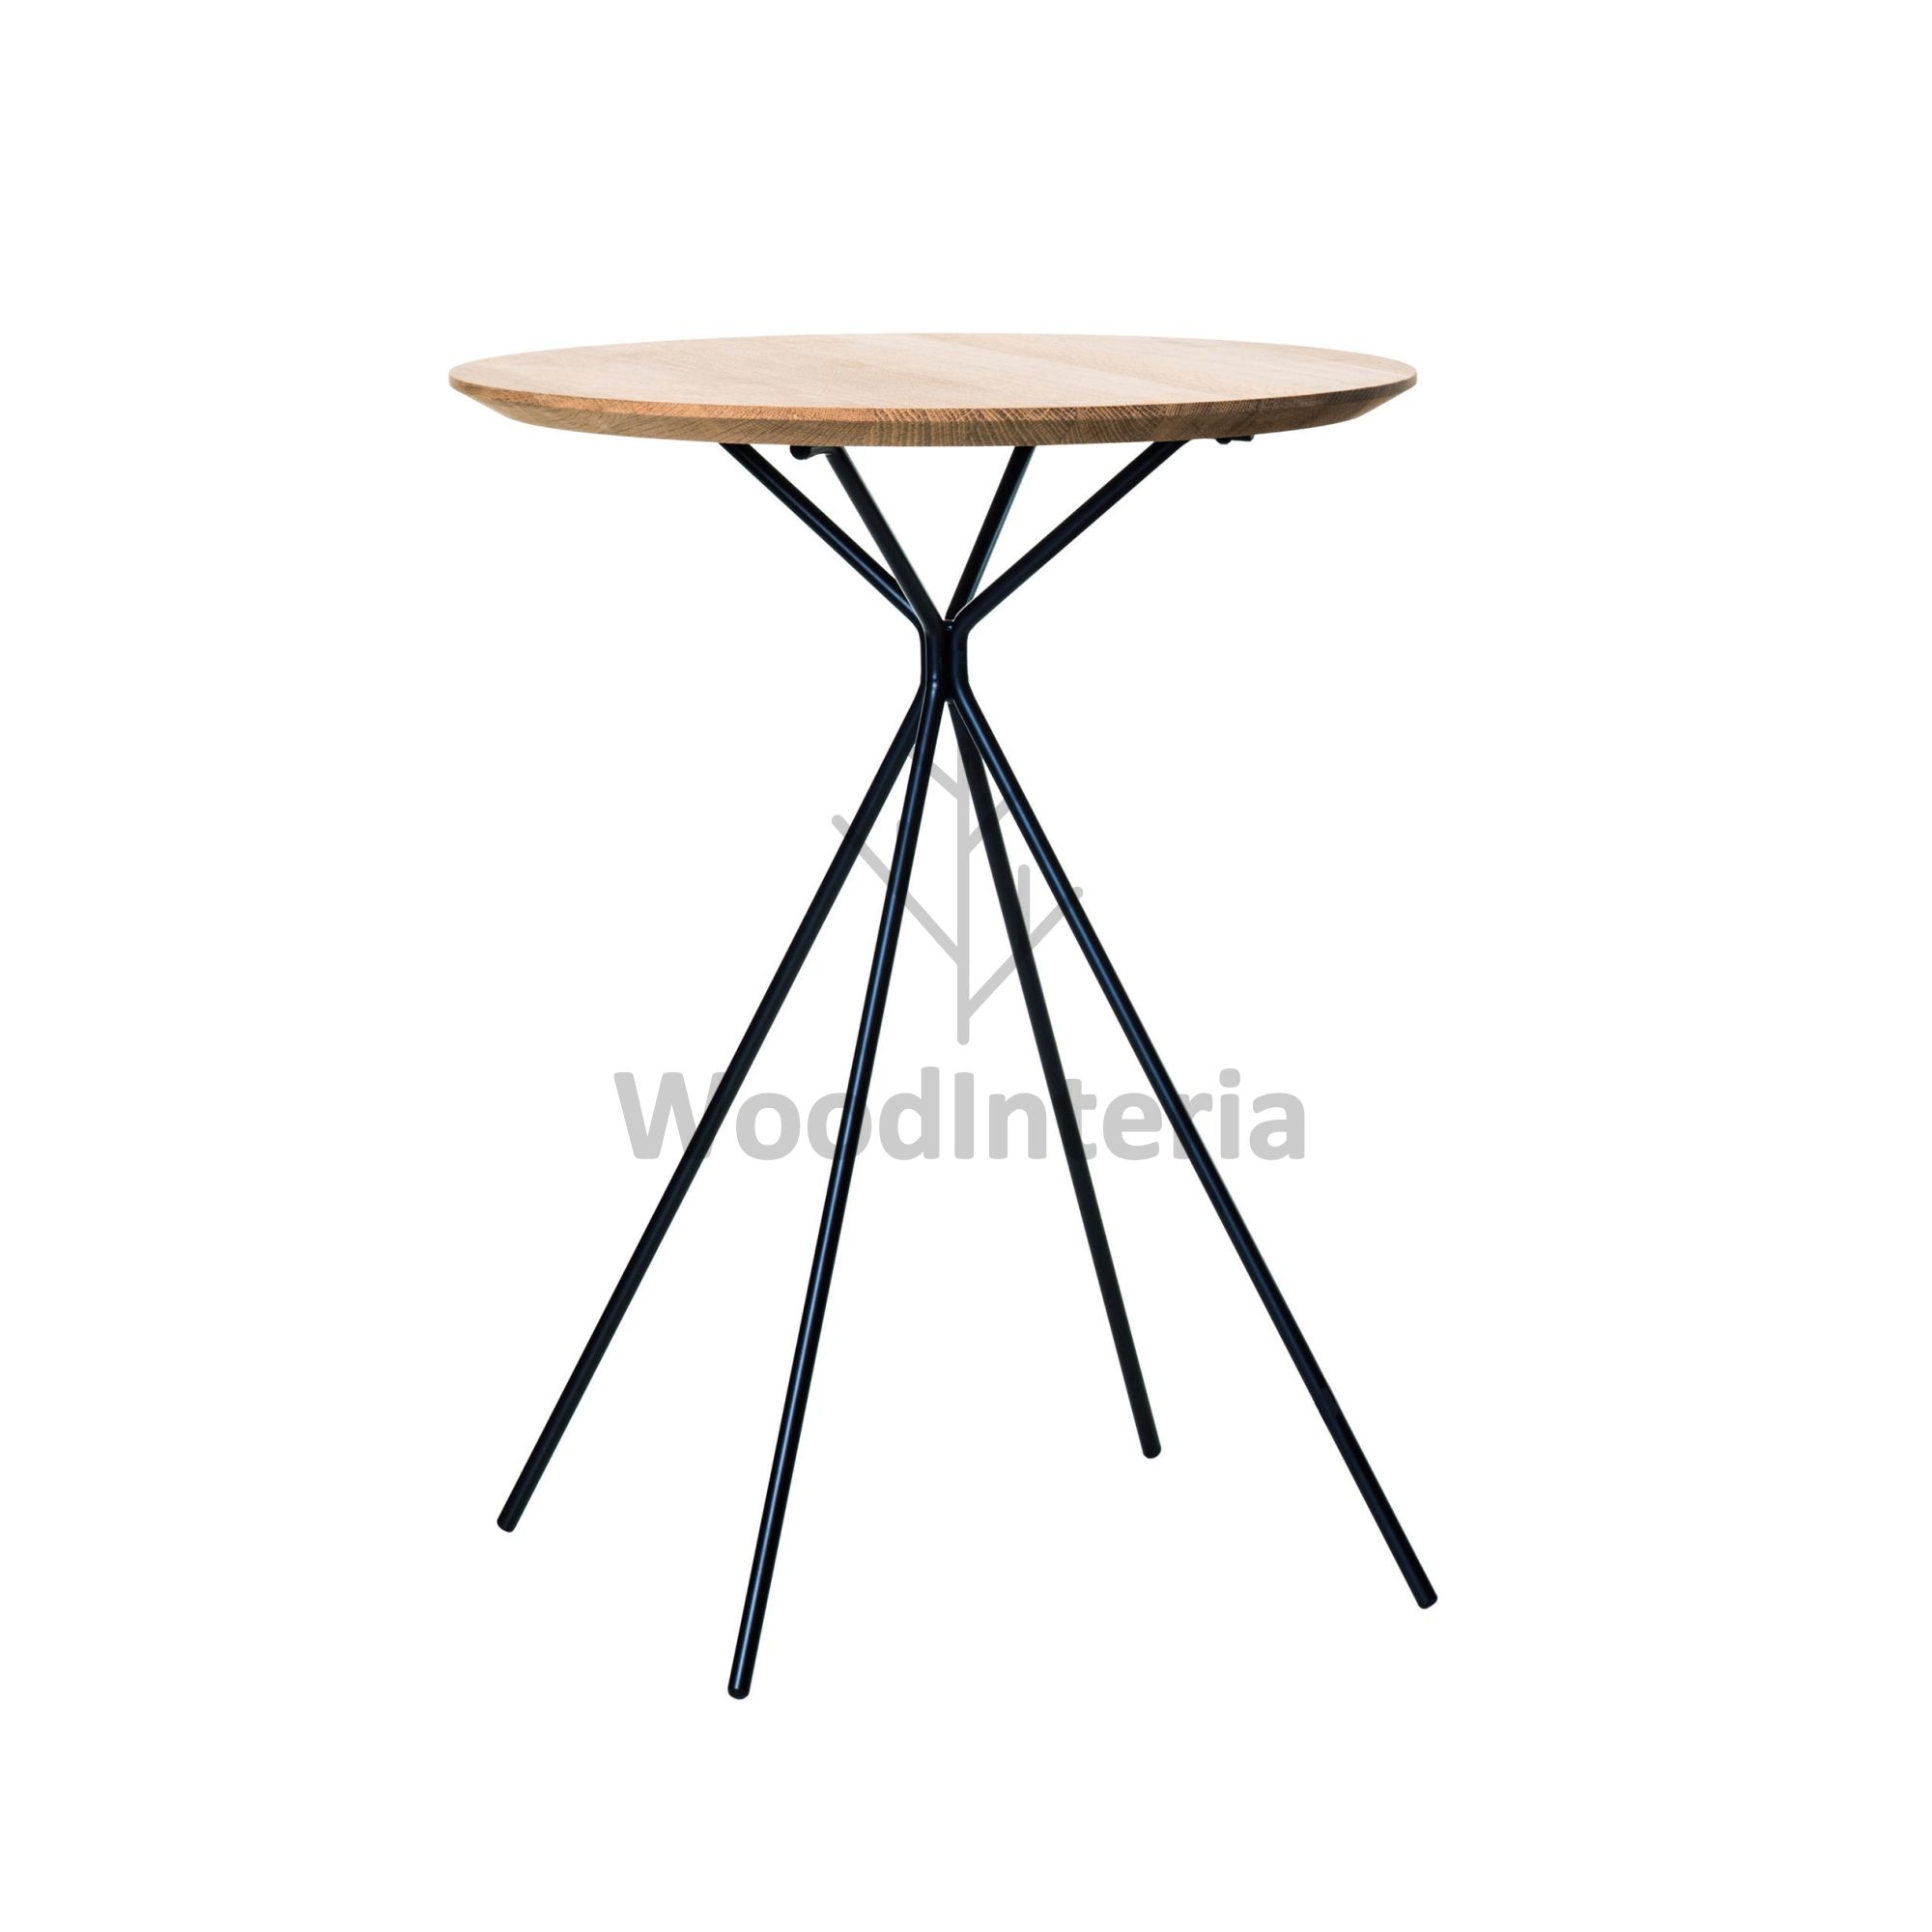 фото стол stik высокий в интерьере лофт эко | WoodInteria